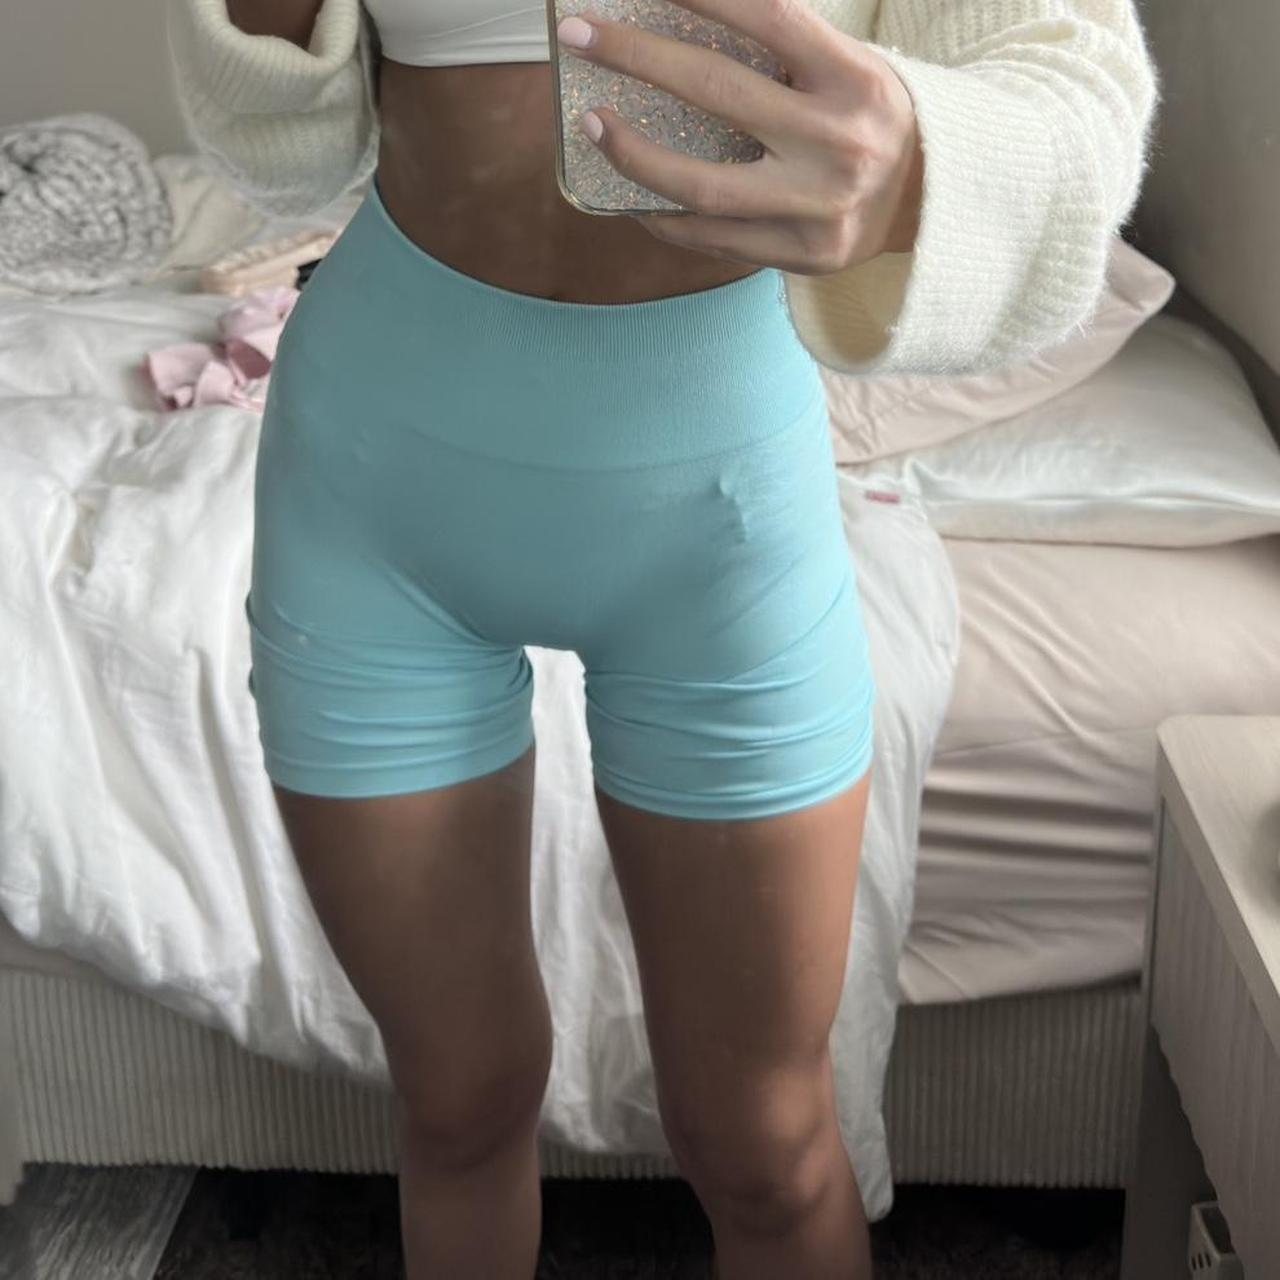 Aurola Workout shorts, worn a few times in perf - Depop